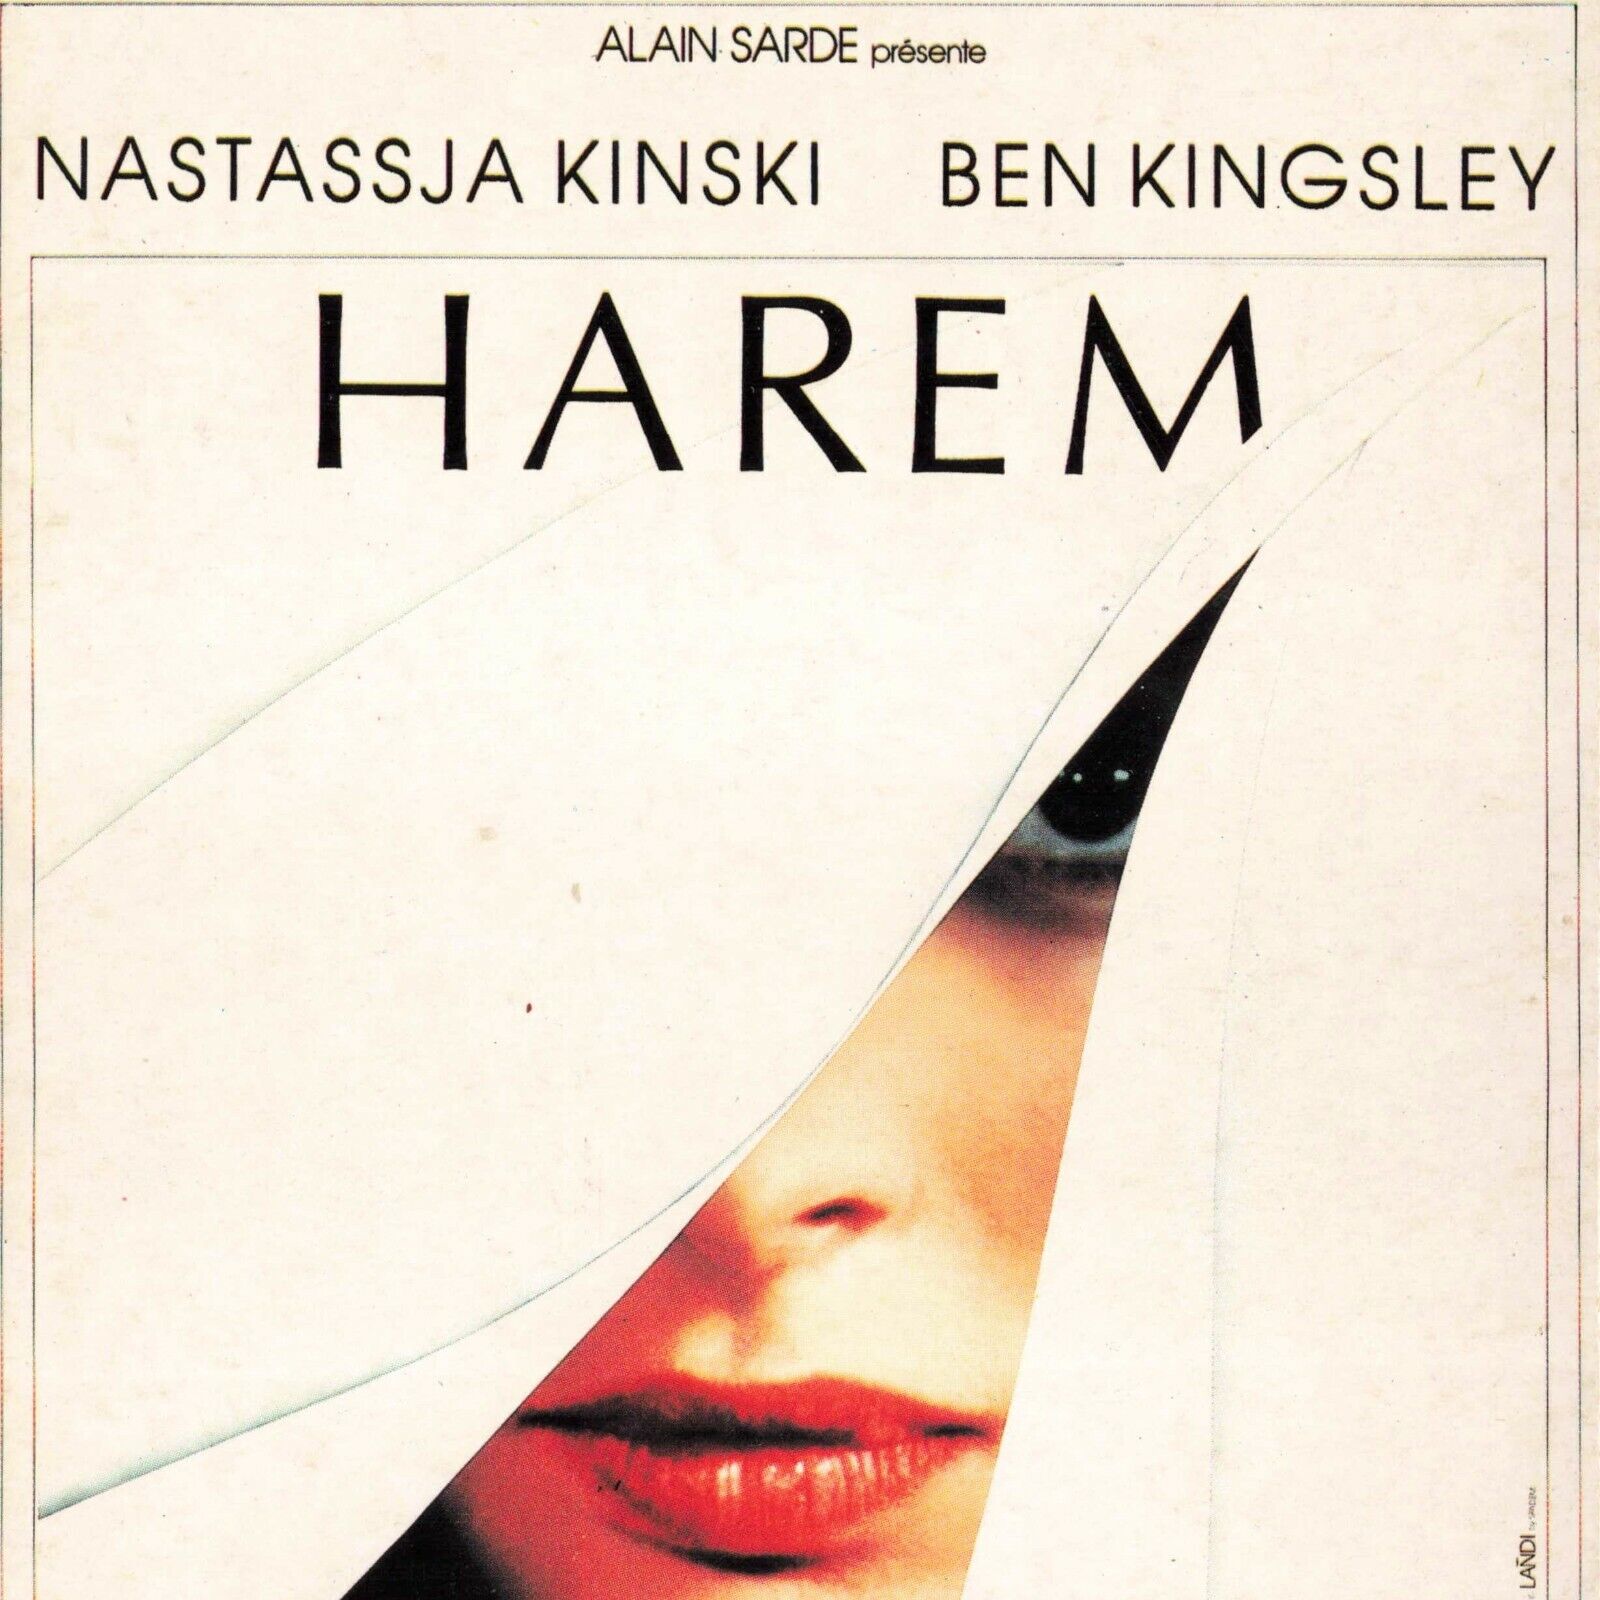 Ben Kingsley Nastassja Kinski Harem1985 Cinema Movie Poster 4x6 Postcard